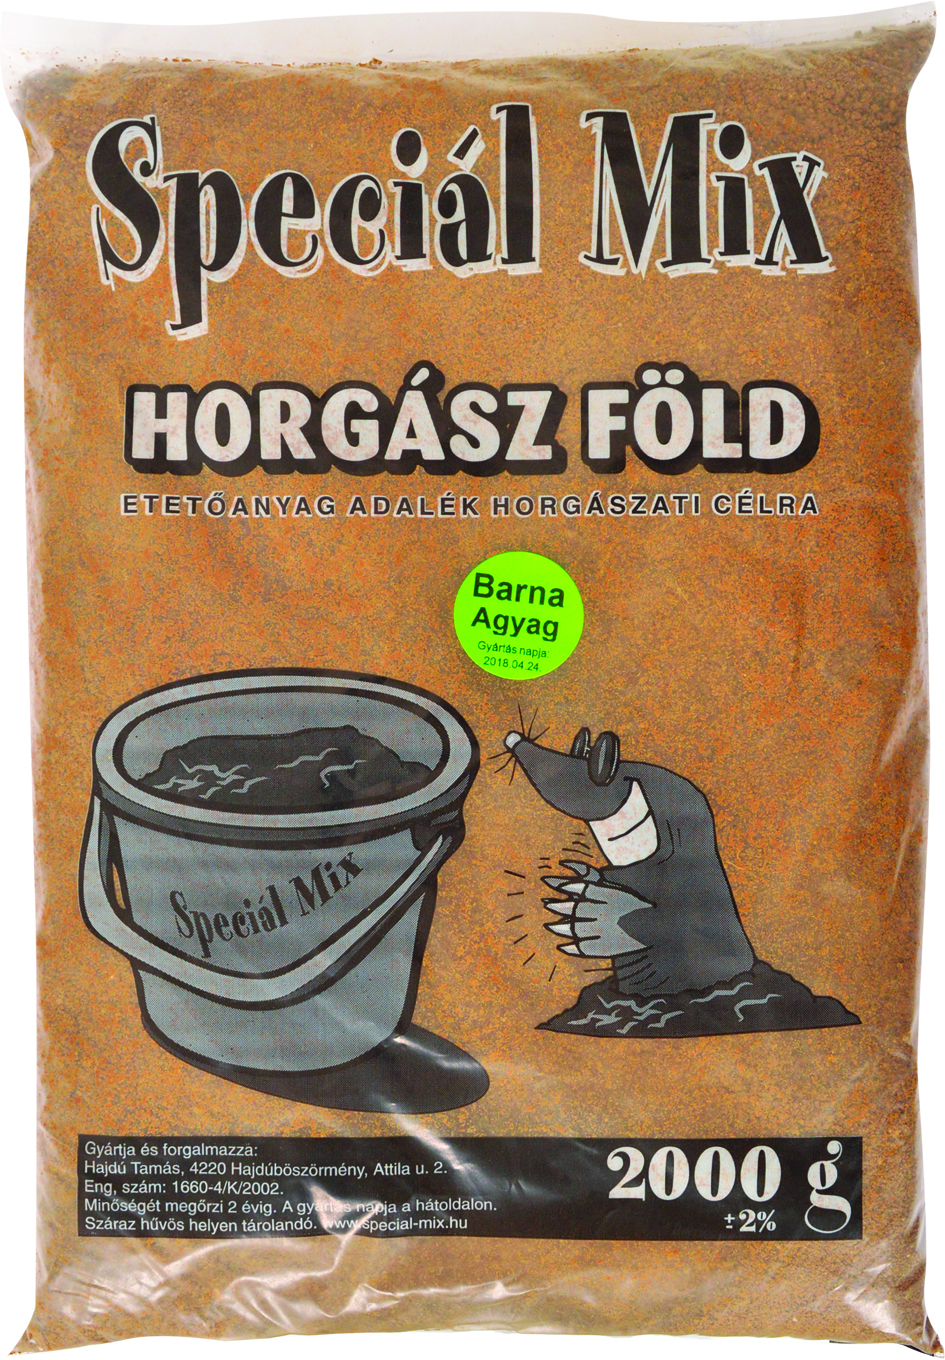 Speciál-mix barna agyag 2 kg